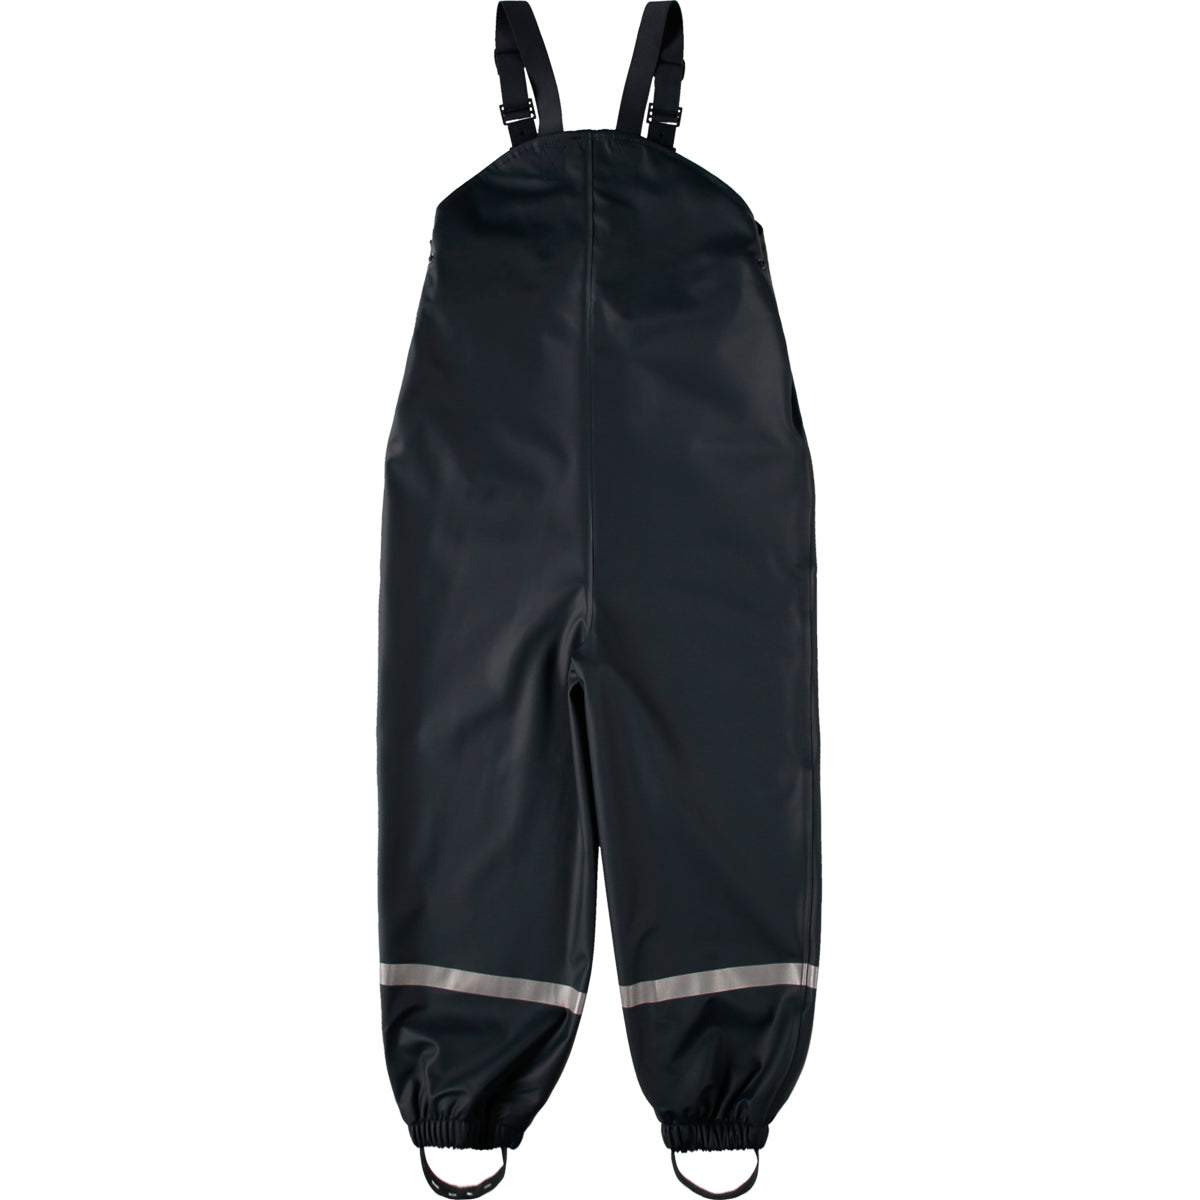 motorcycle waterproof Rain pants bib with suspenders XS  eBay